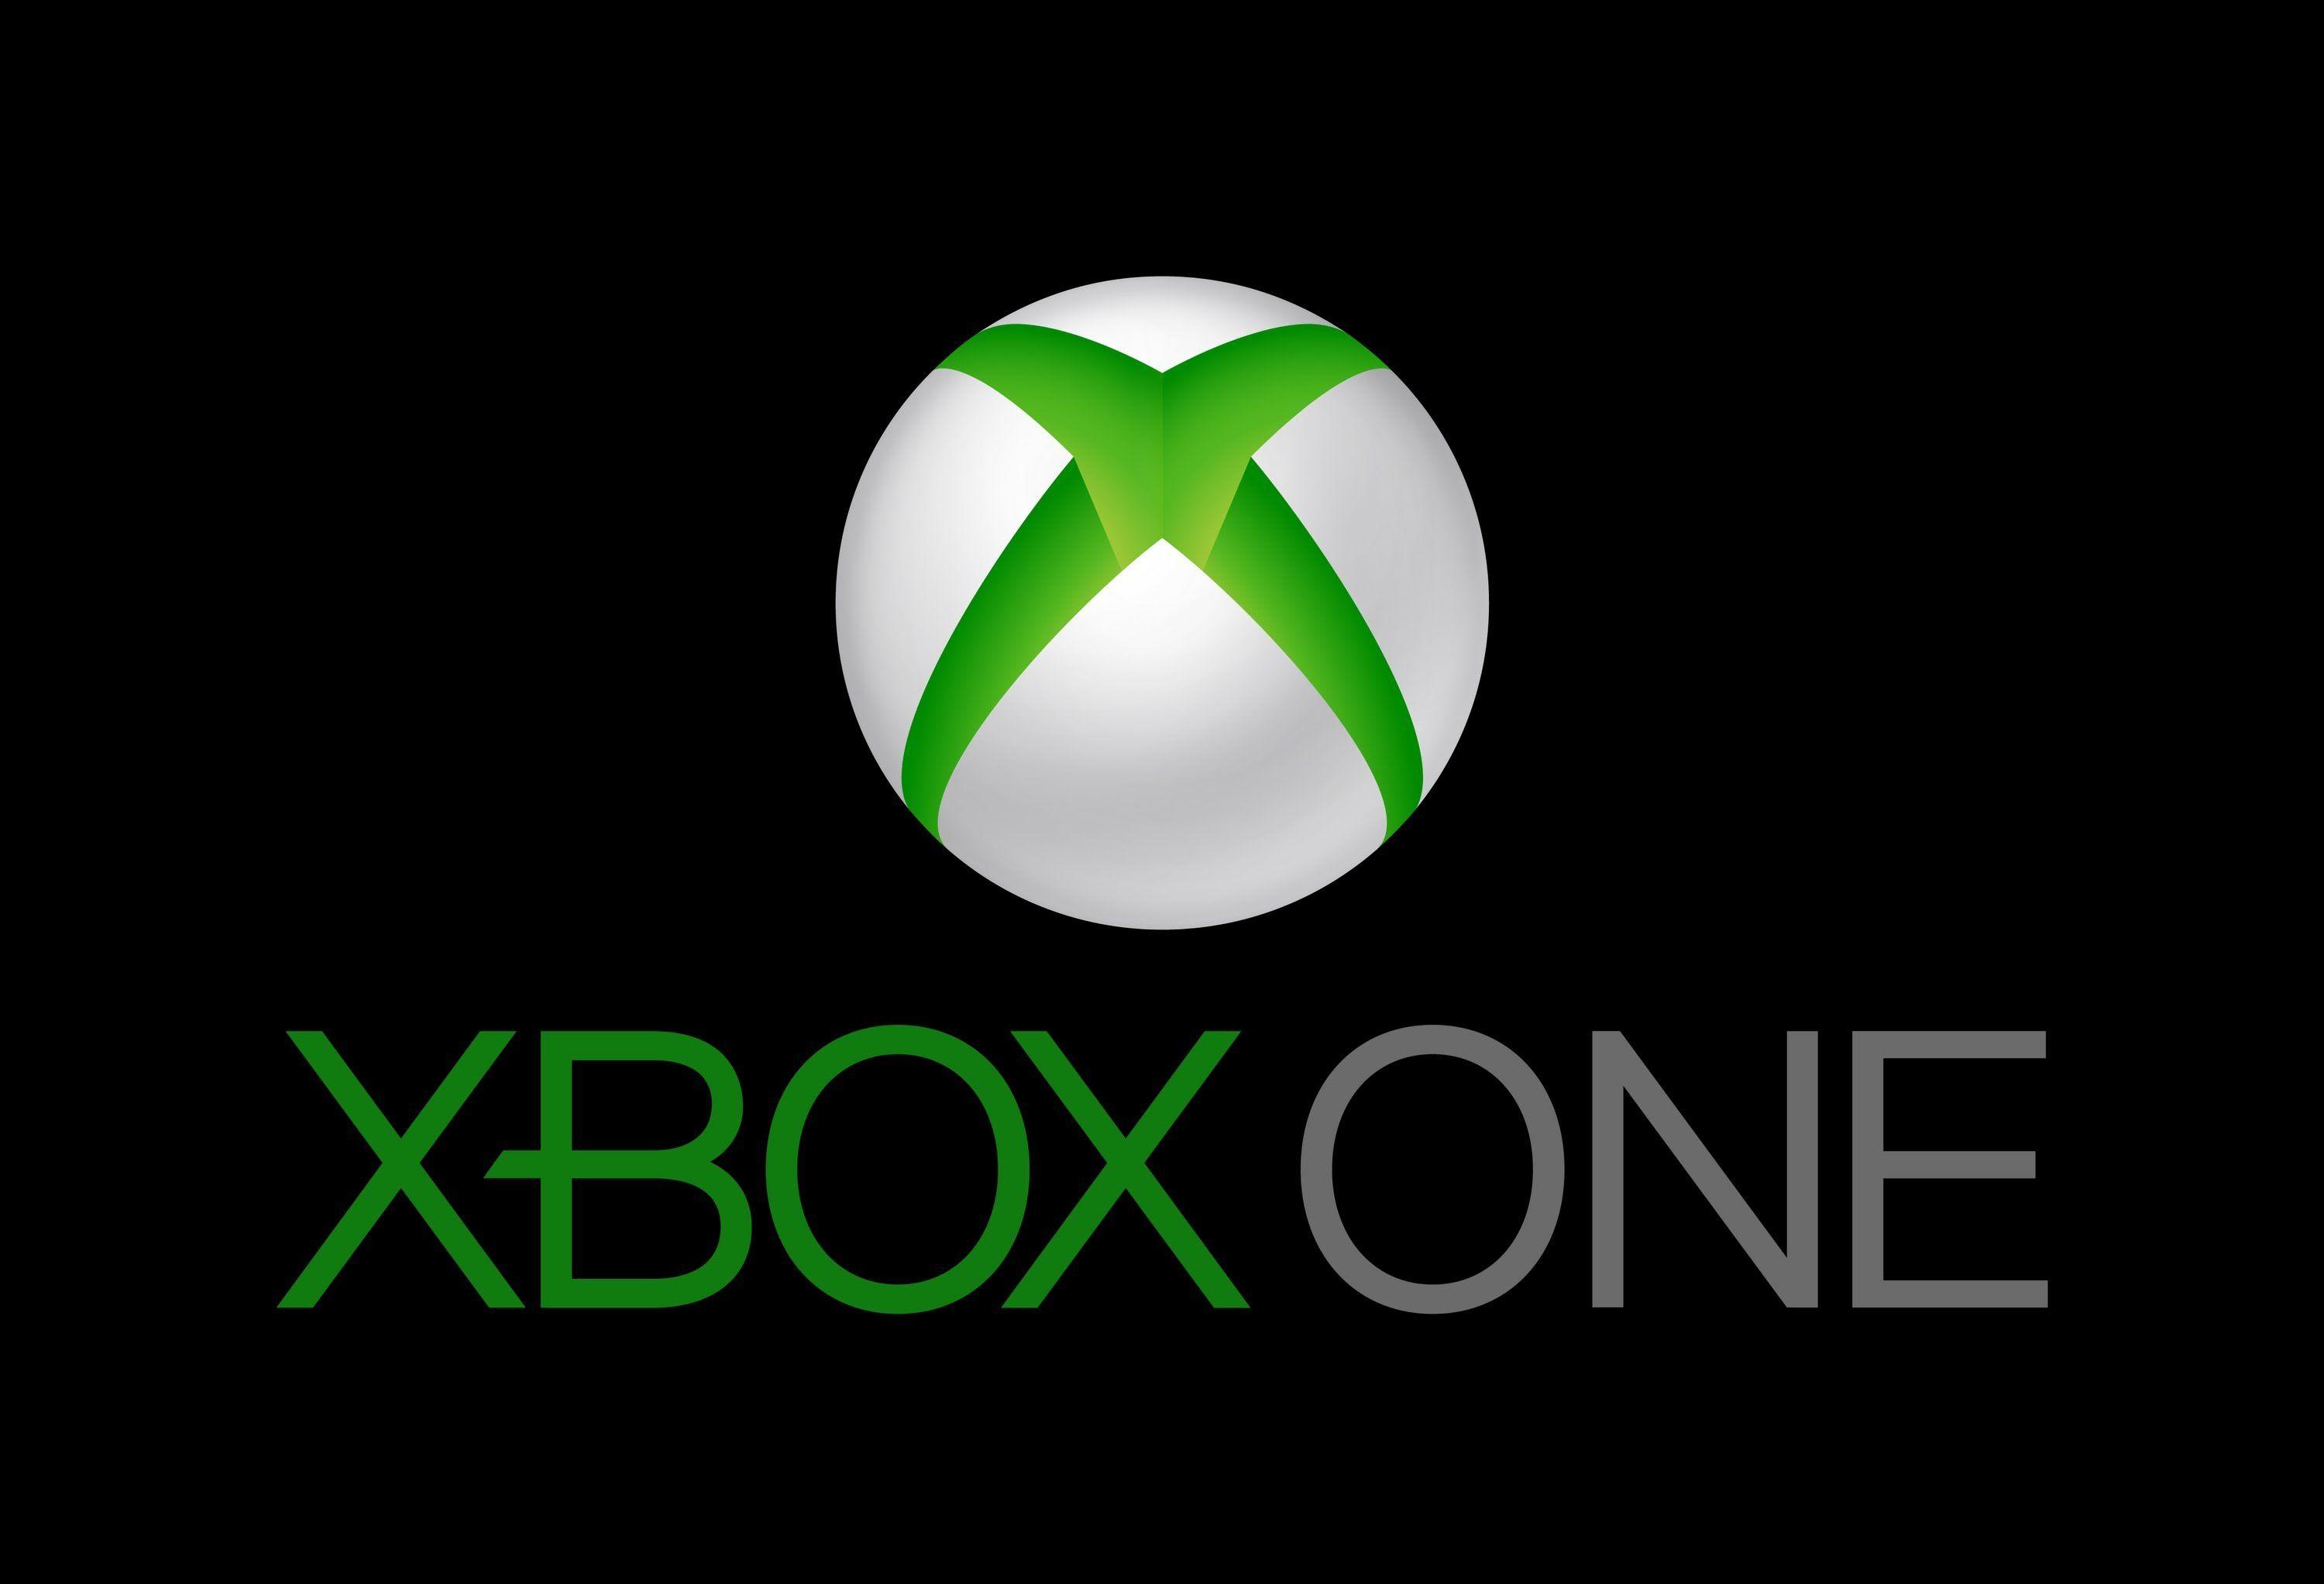 Nếu bạn là một người yêu thích Xbox, hãy xem ngay hình ảnh này với logo Xbox trên nền đen đầy mạnh mẽ. Được thiết kế để kích thích cảm giác hưng phấn, hình ảnh sẽ khiến bạn mê mẩn và thích thú.